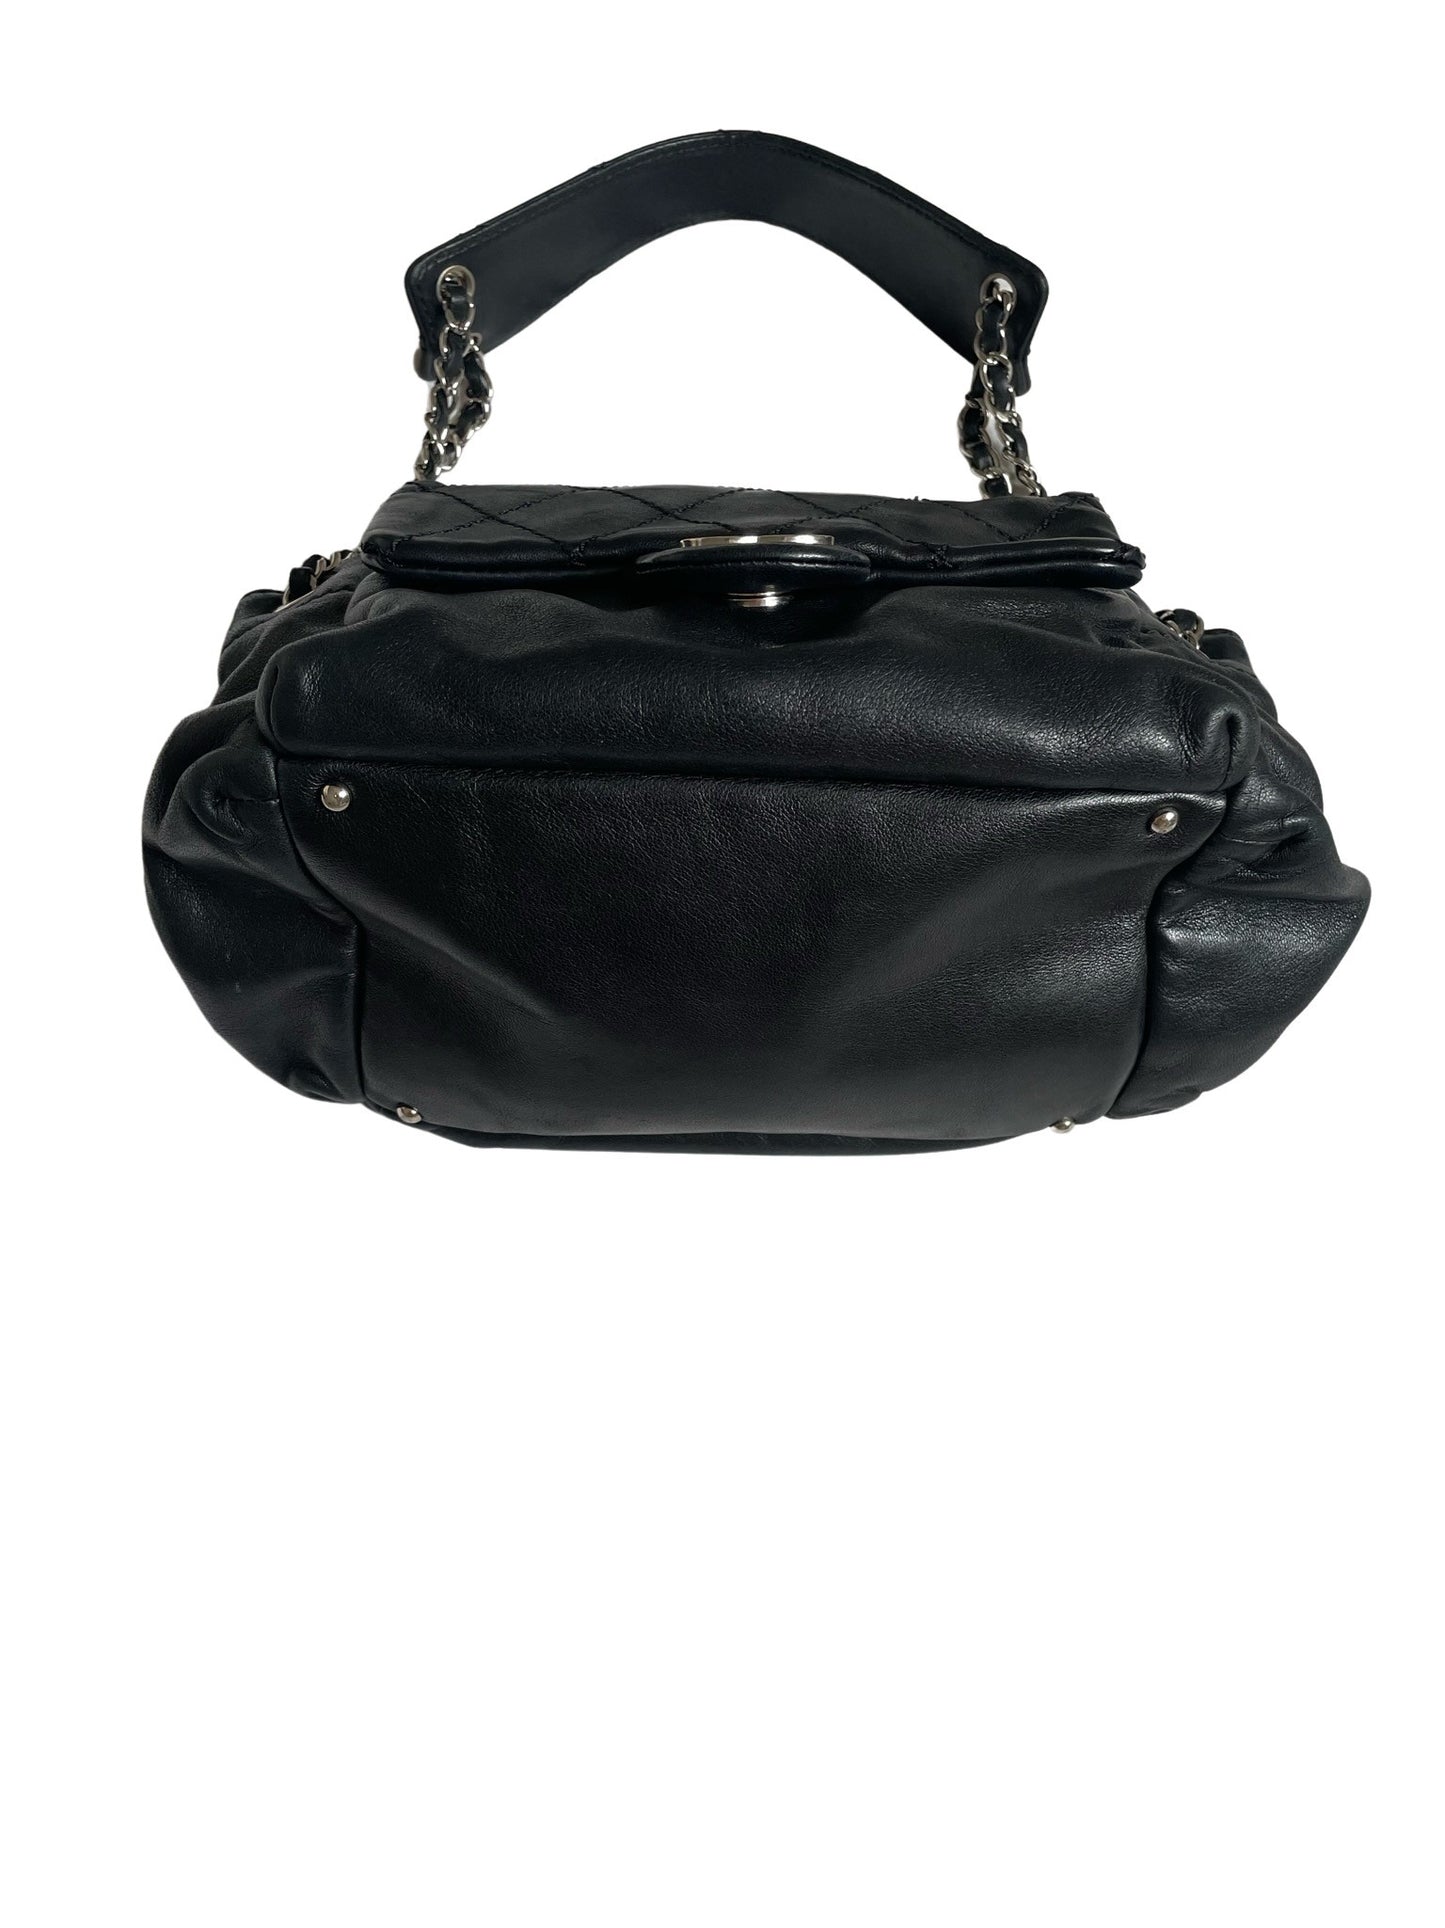 Chanel Wild Stitch Black Lambskin Shoulder Bag